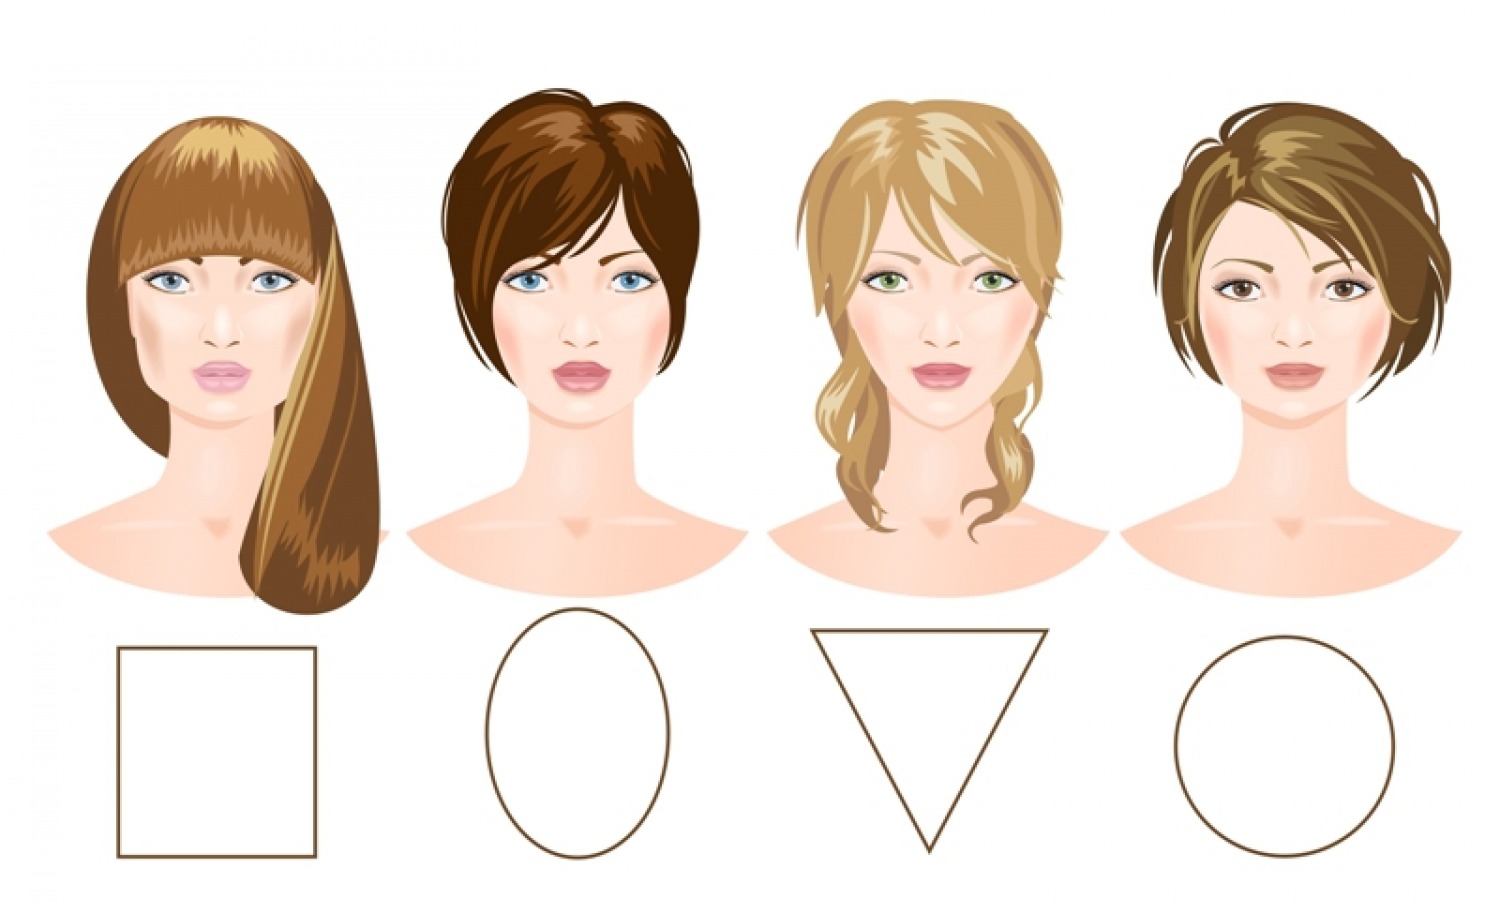 9 Best Hairstyles for Square Faces - L'Oréal Paris